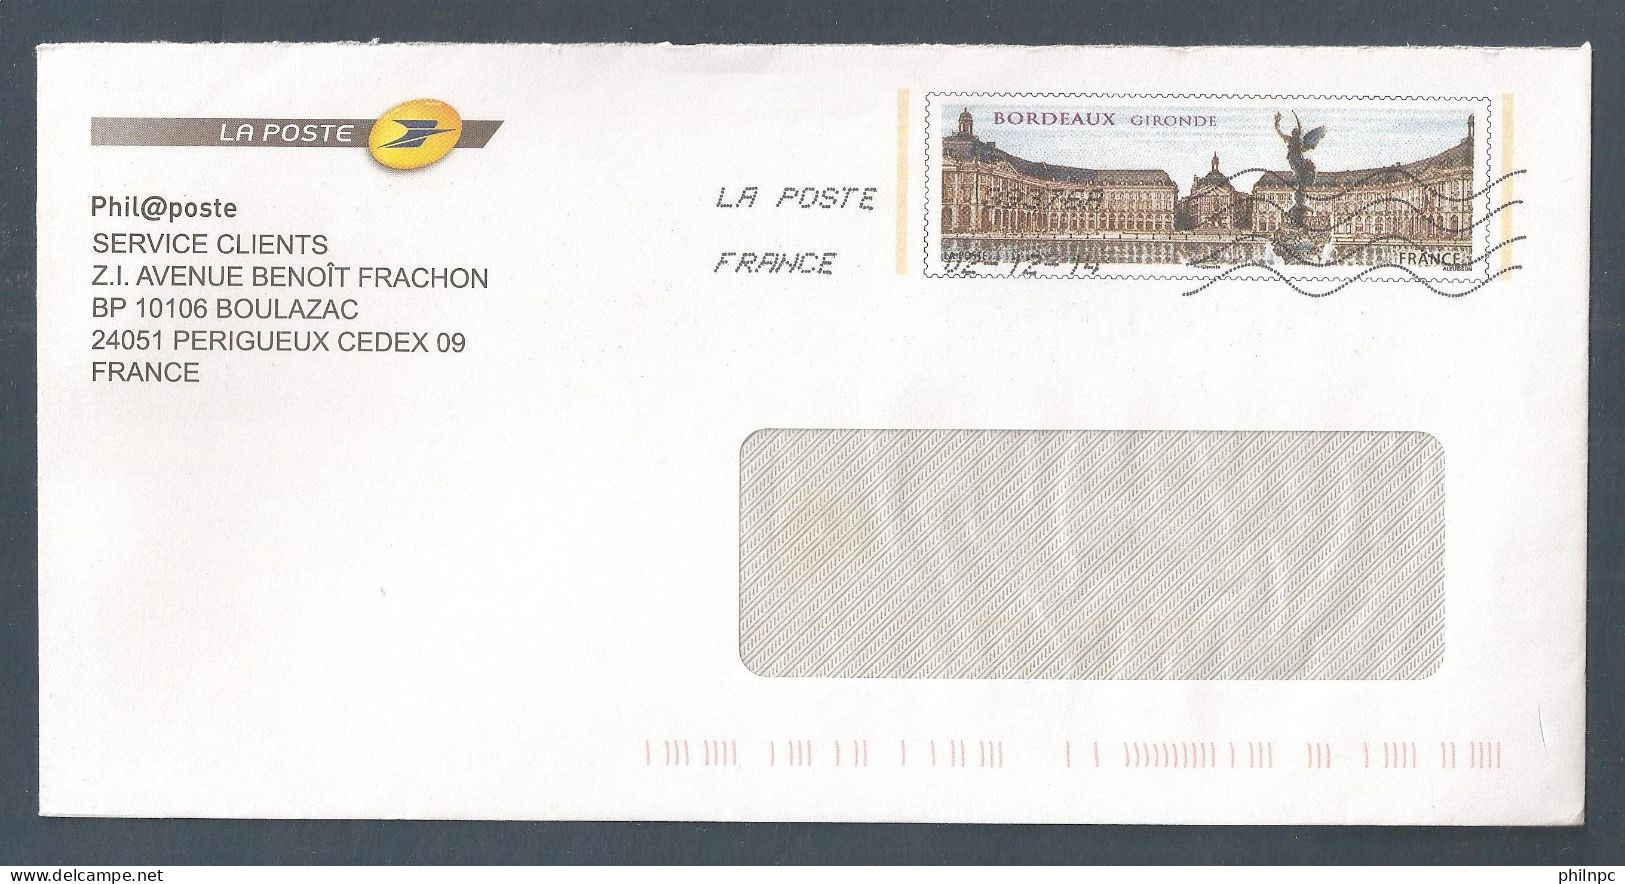 France, Entier Postal, Prêt à Poster, 4370, Phil@poste, Bordeaux, Gironde - PAP: TSC Und Halboffizielle Aufdrucke